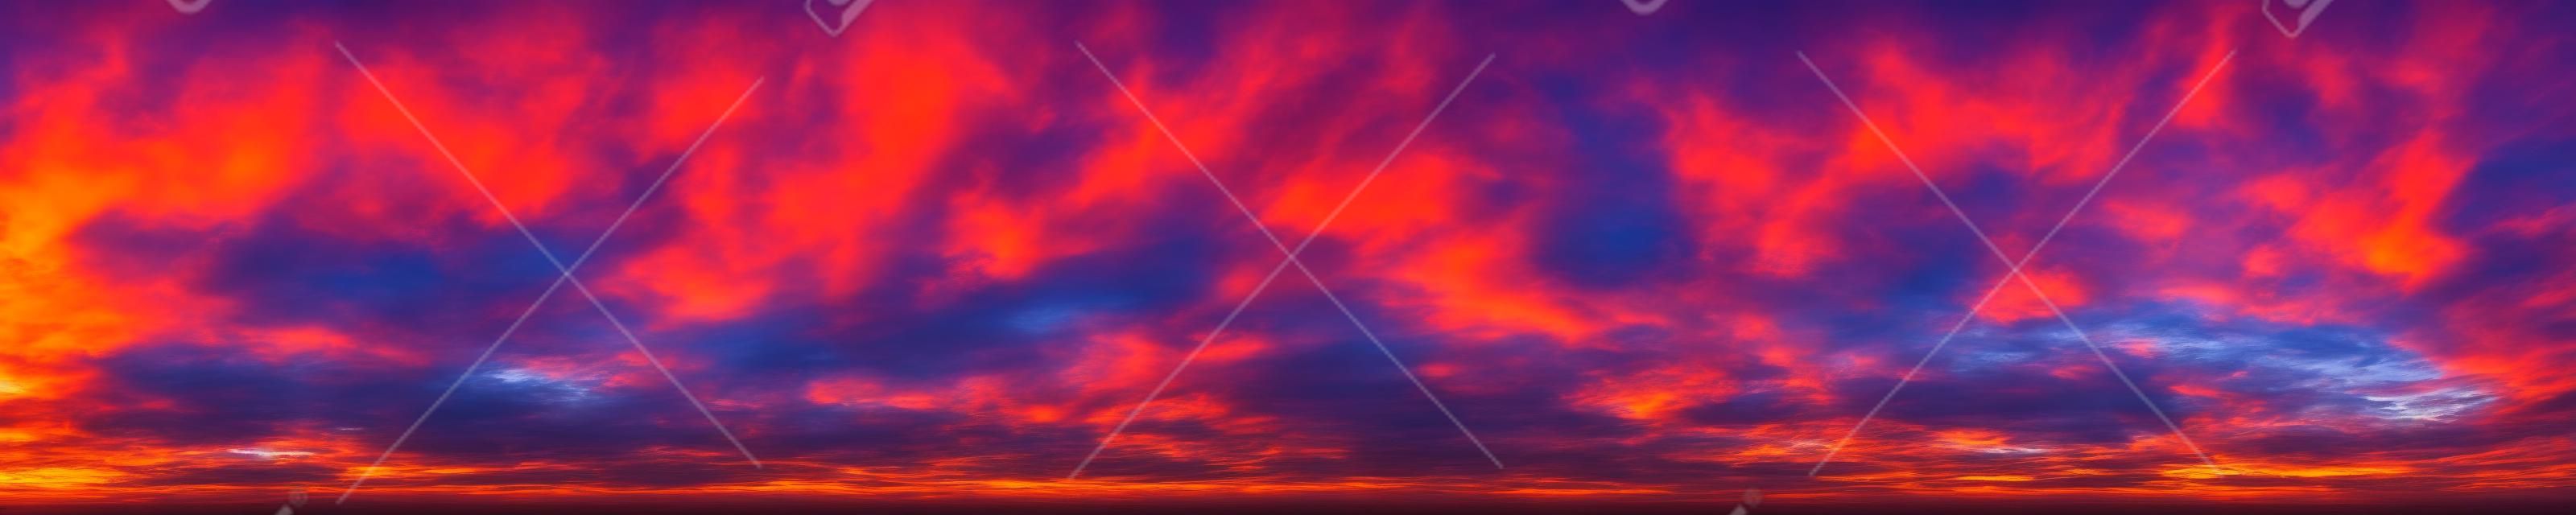 Panorama von dramatisch lebendigen Farben mit wunderschönen Wolken von Sonnenaufgang und Sonnenuntergang. Panoramabild.